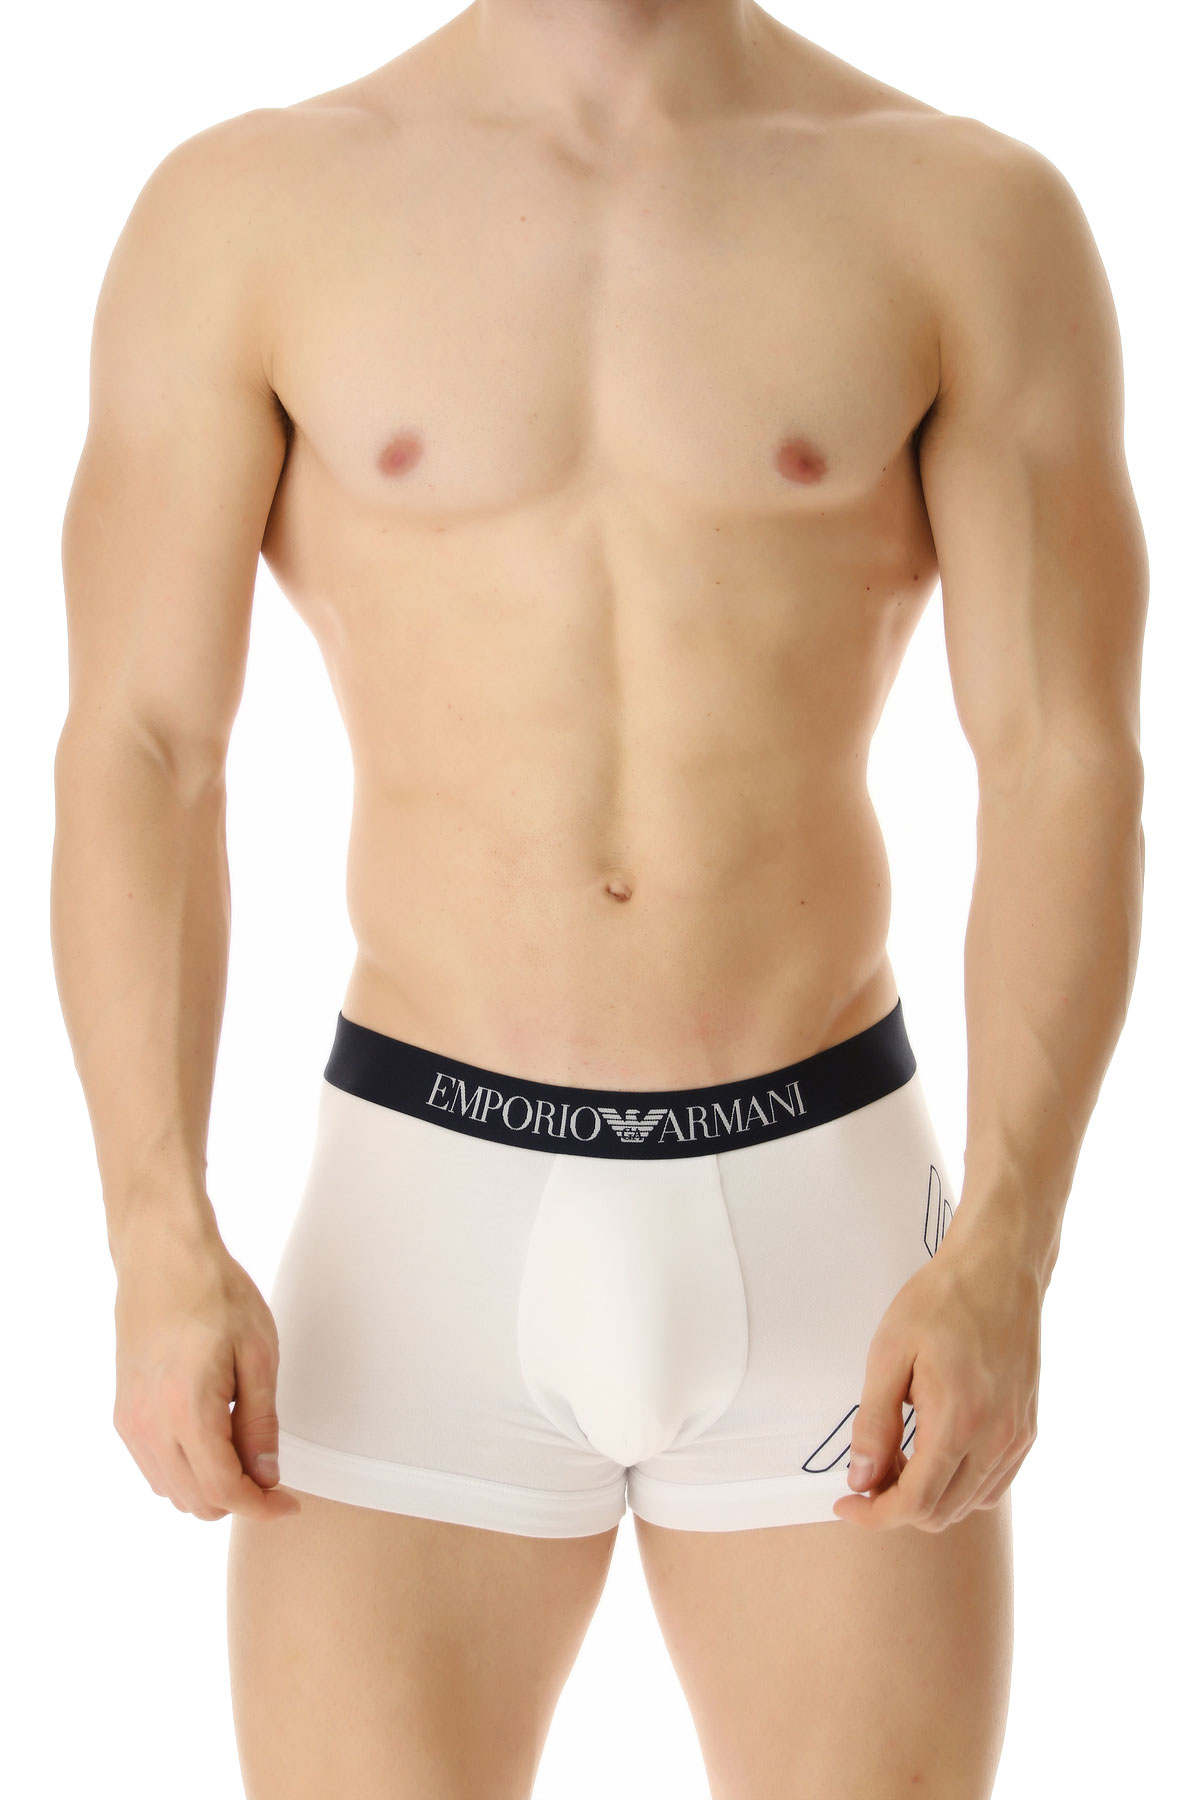 emporio armani underwear australia